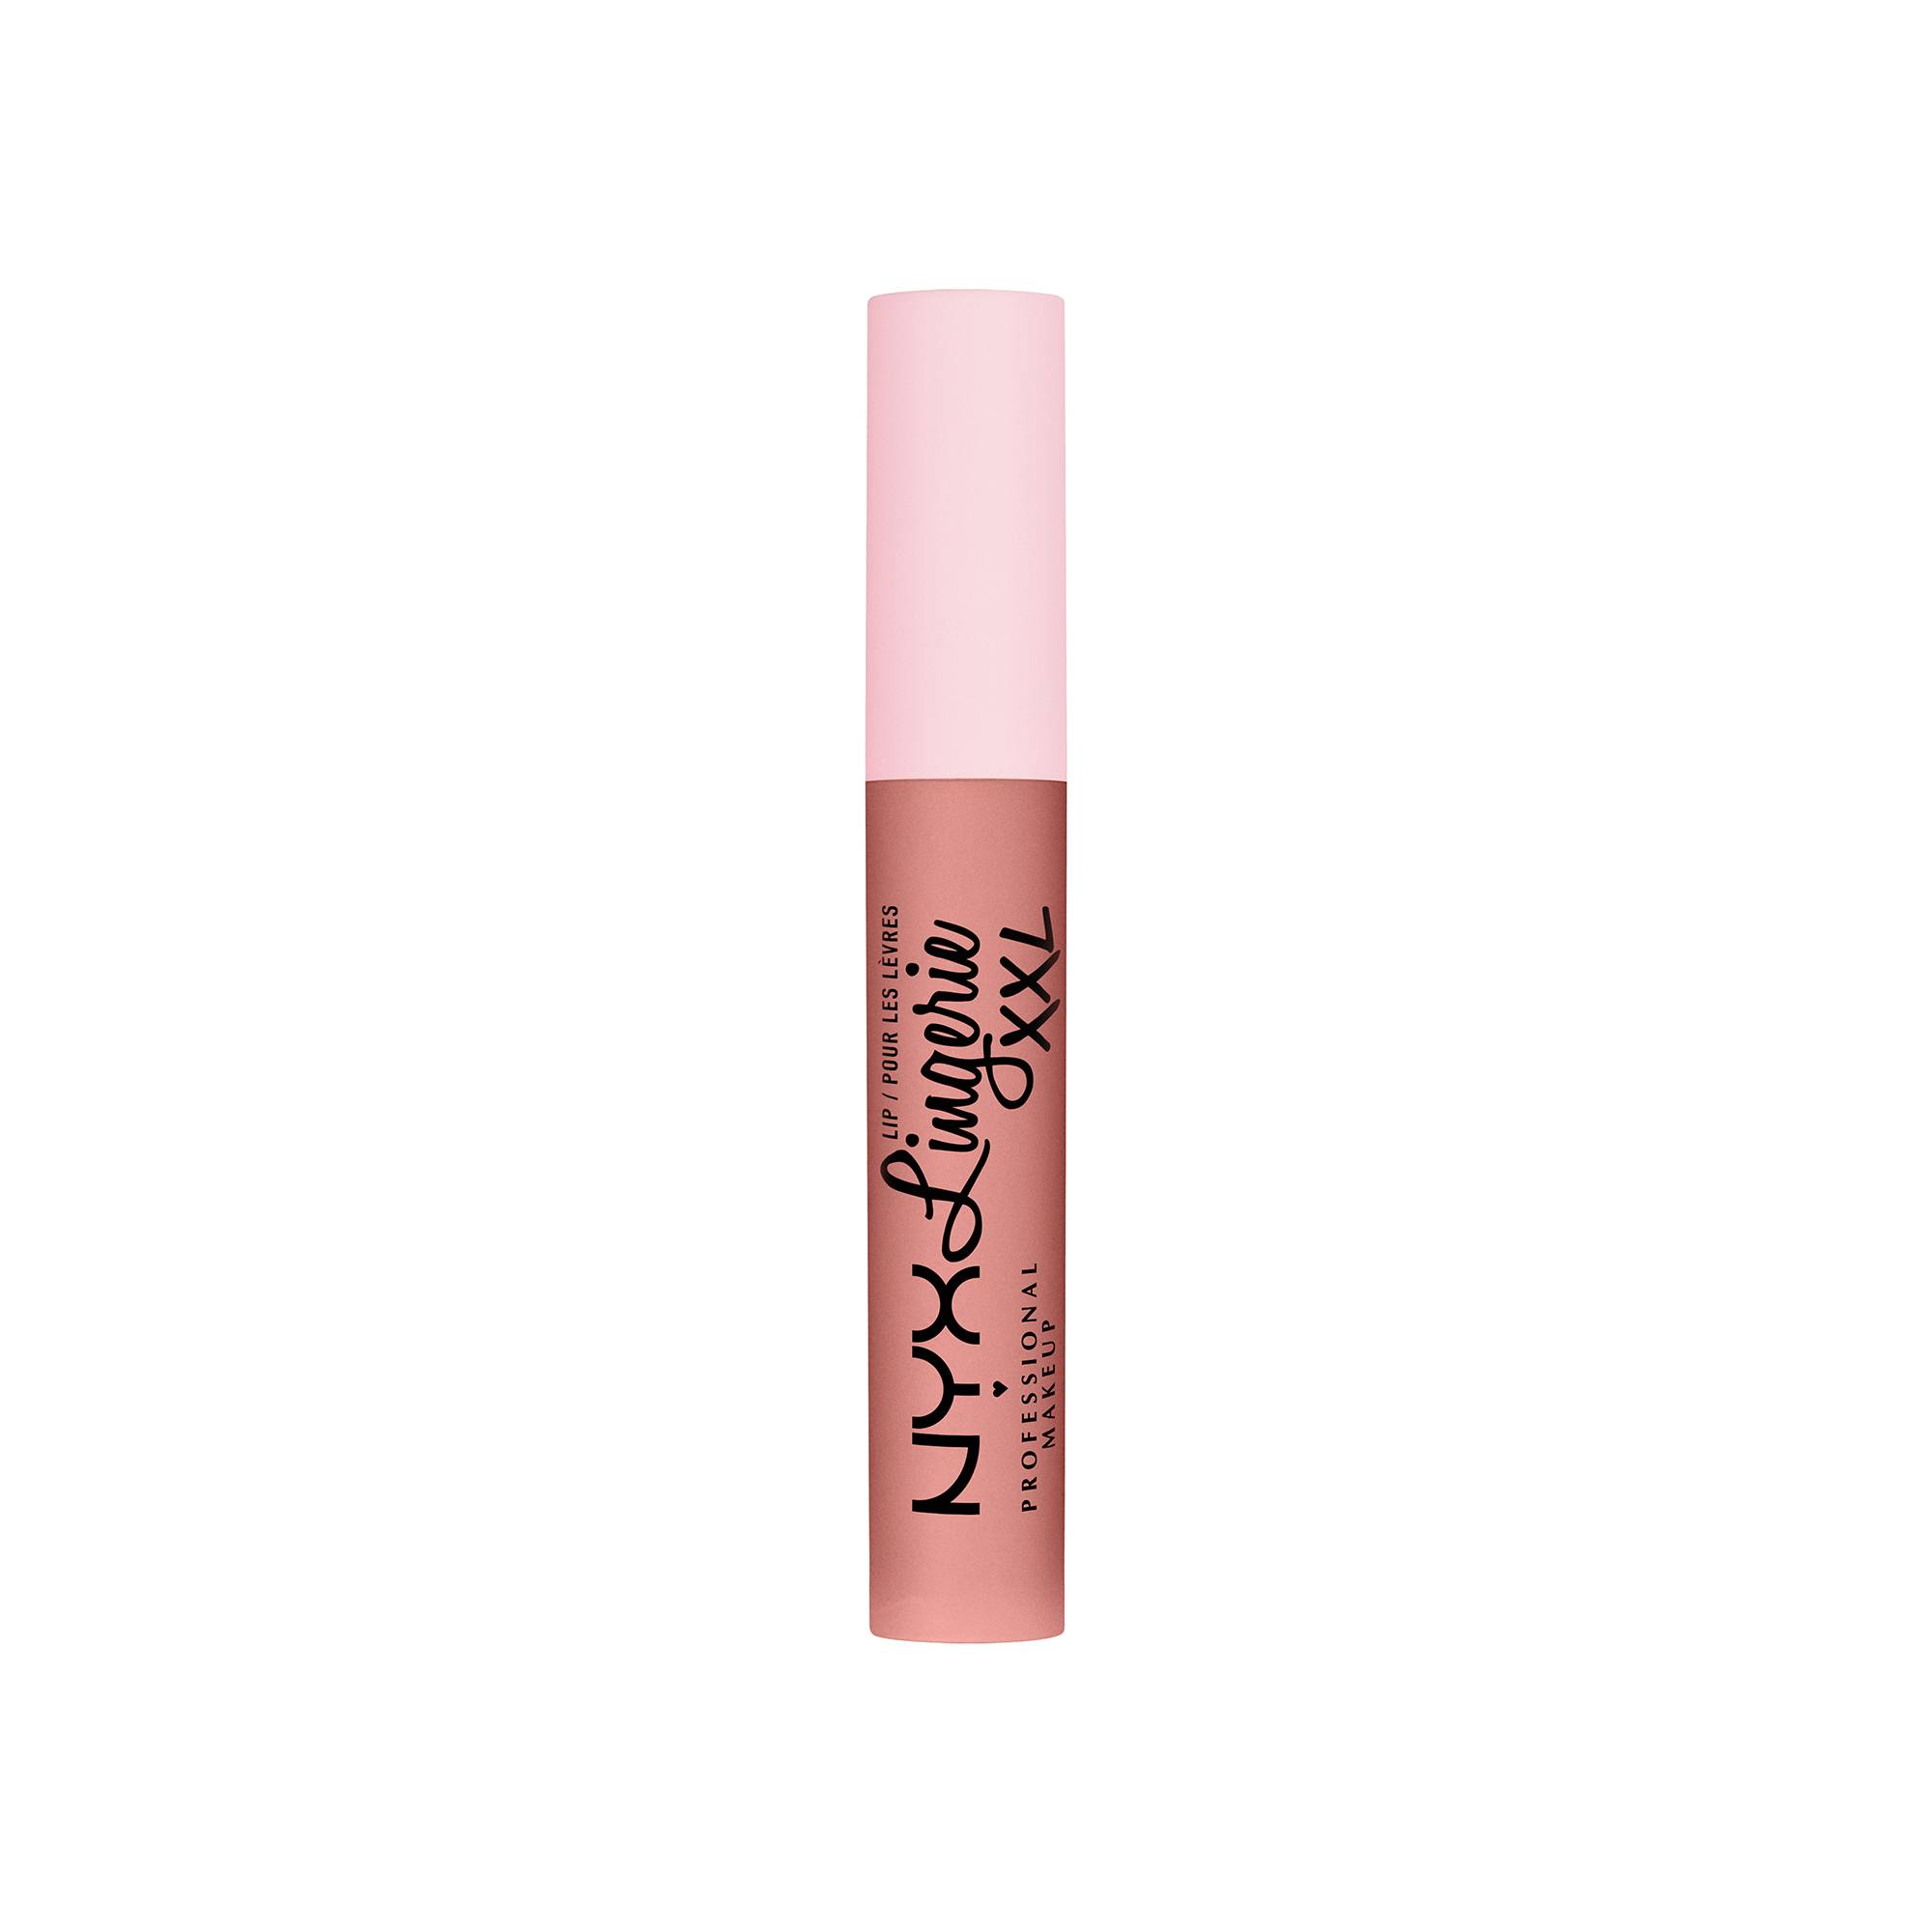 Rouge à lèvres lip lingerie XXL - Undressed de la marque NYX Professional Makeup - 1